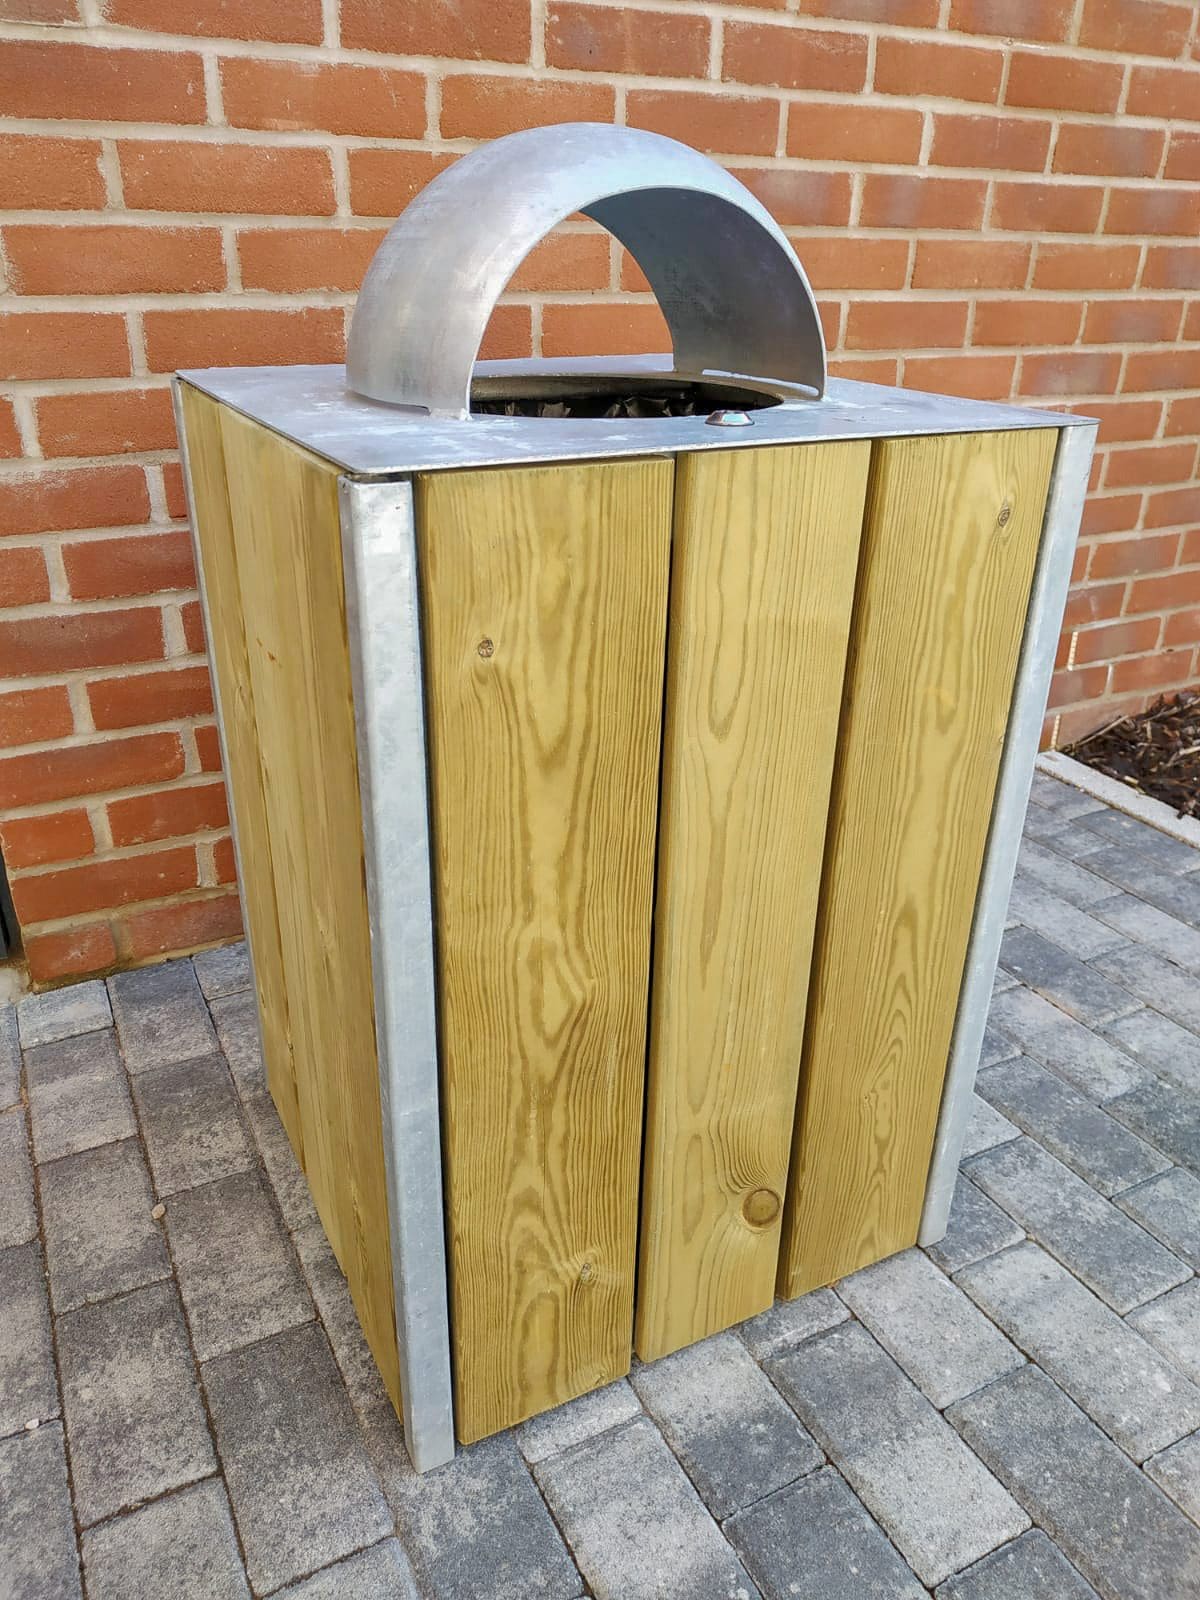 Outdoor wooden and metal bin